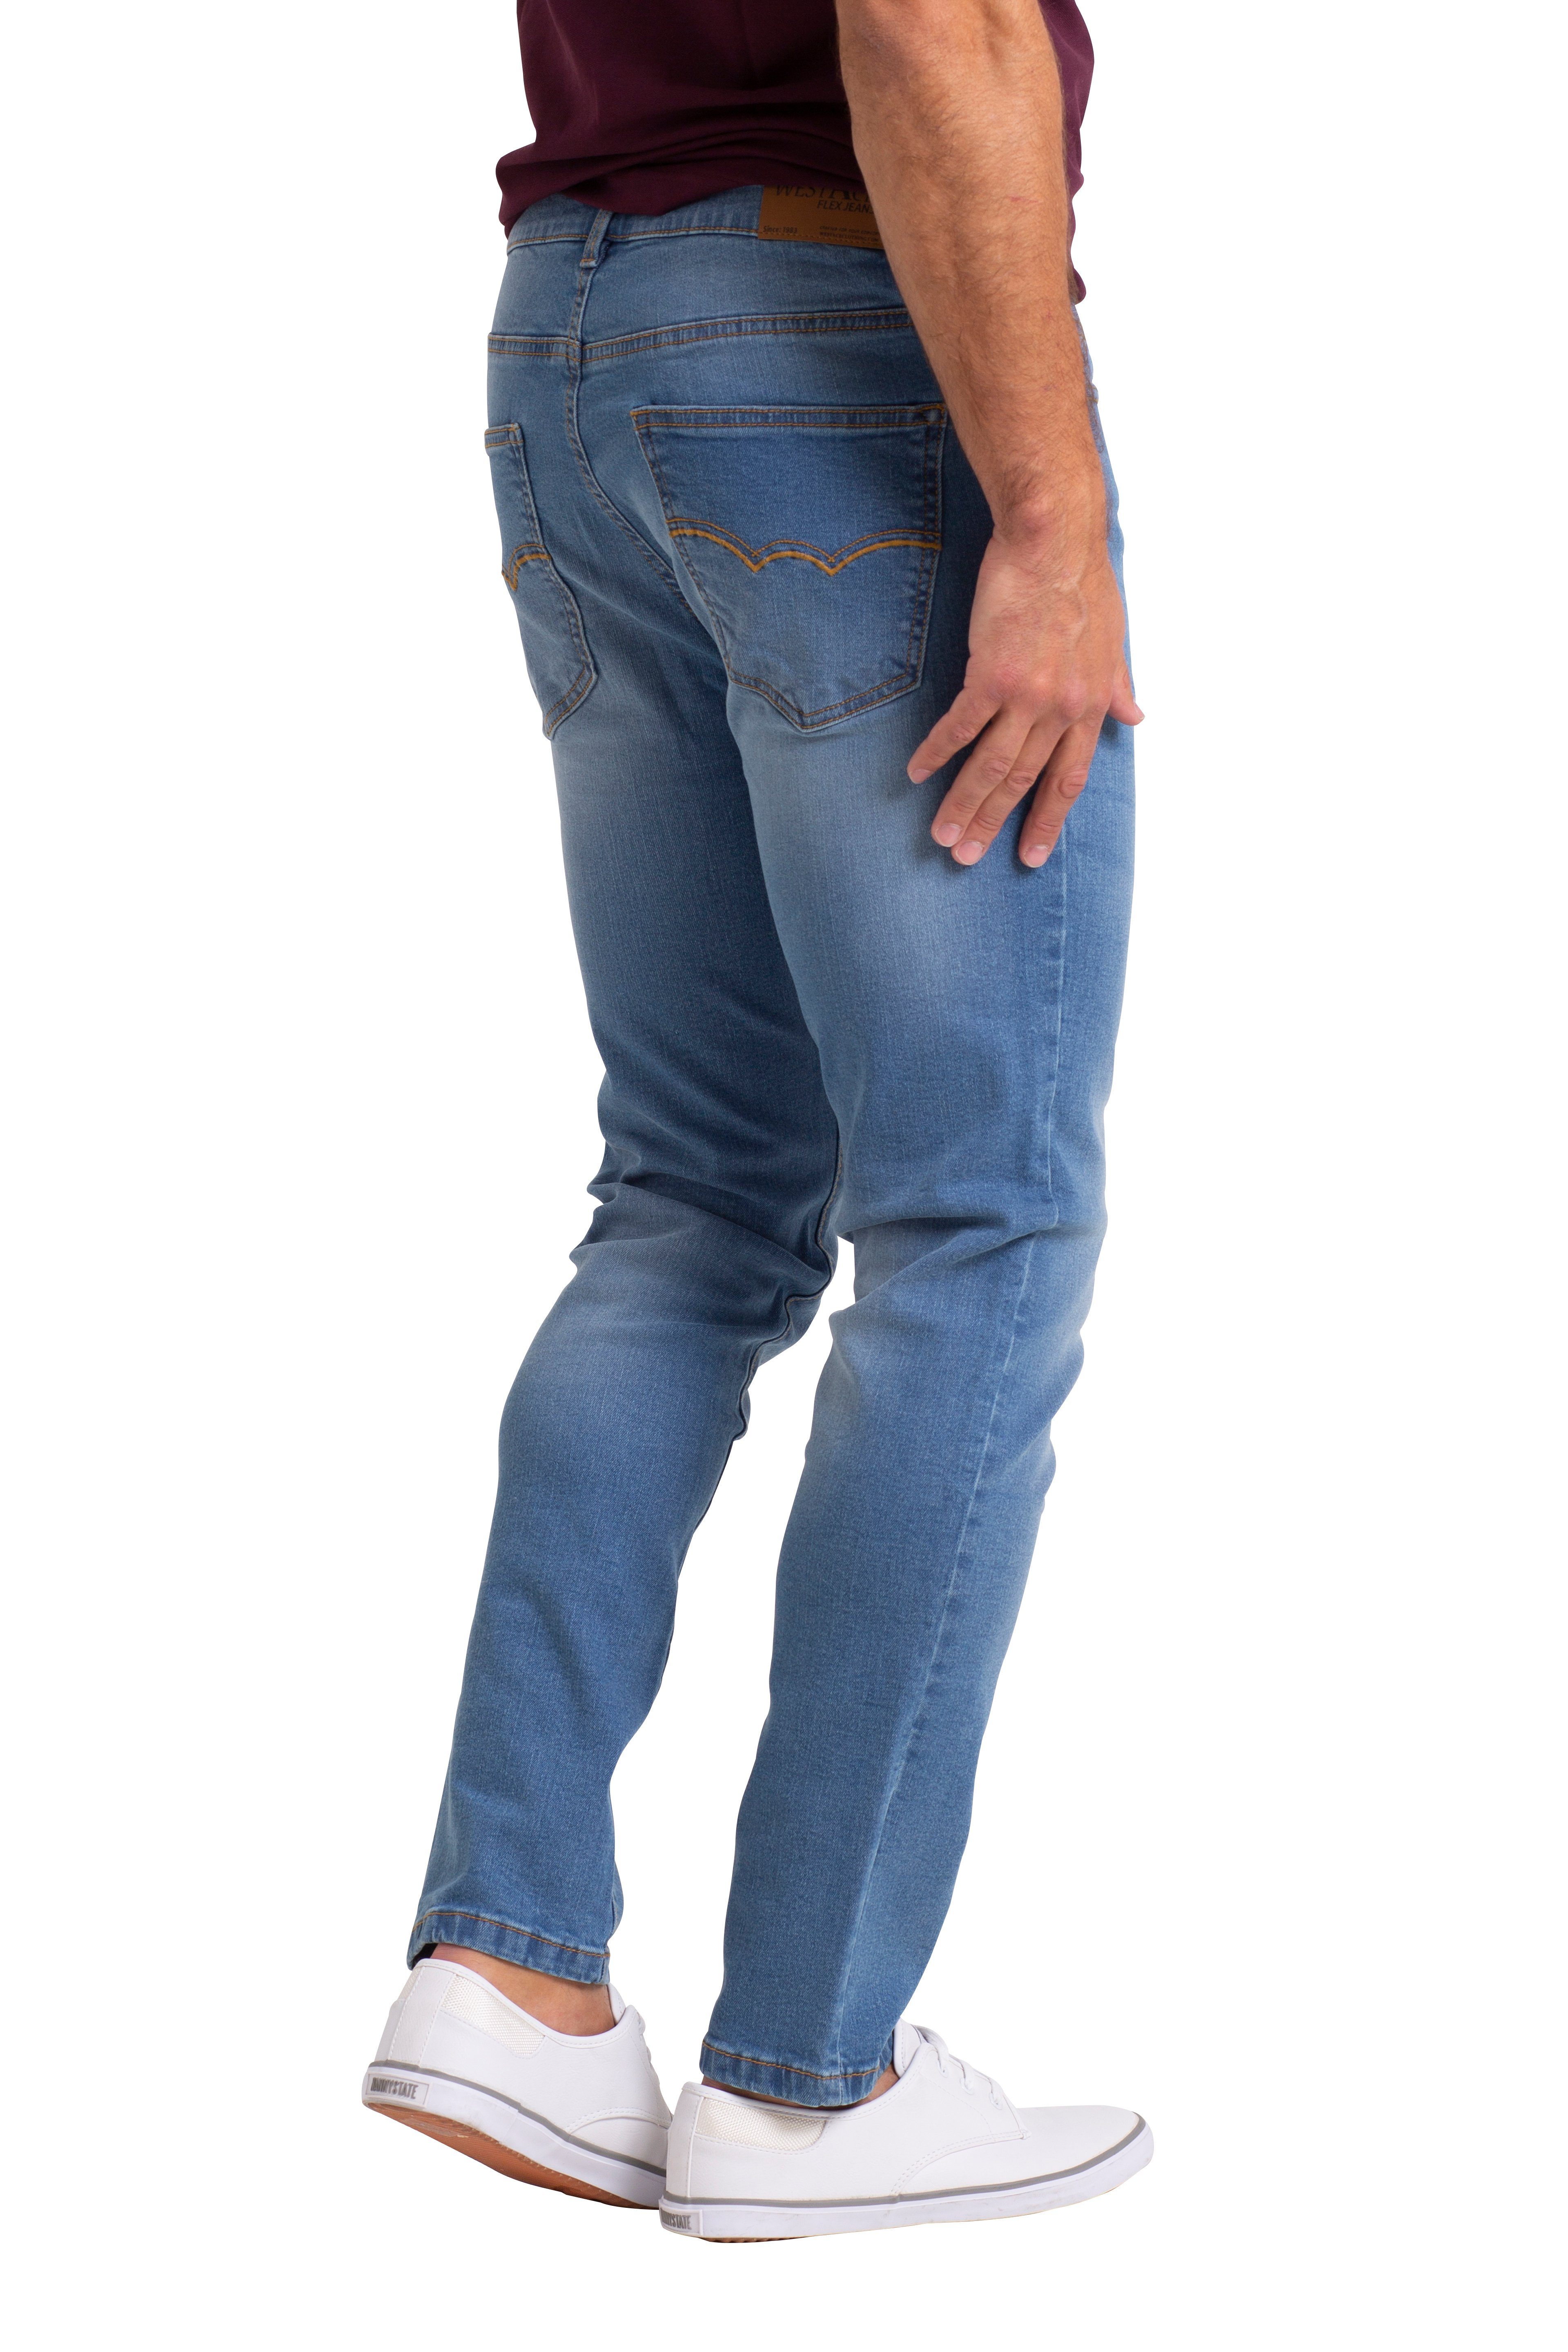 BlauerHafen Slim-fit-Jeans Herren Stretch Hose Dünn Denim Passform Schlanke strecken Denim Jeans Hellblau